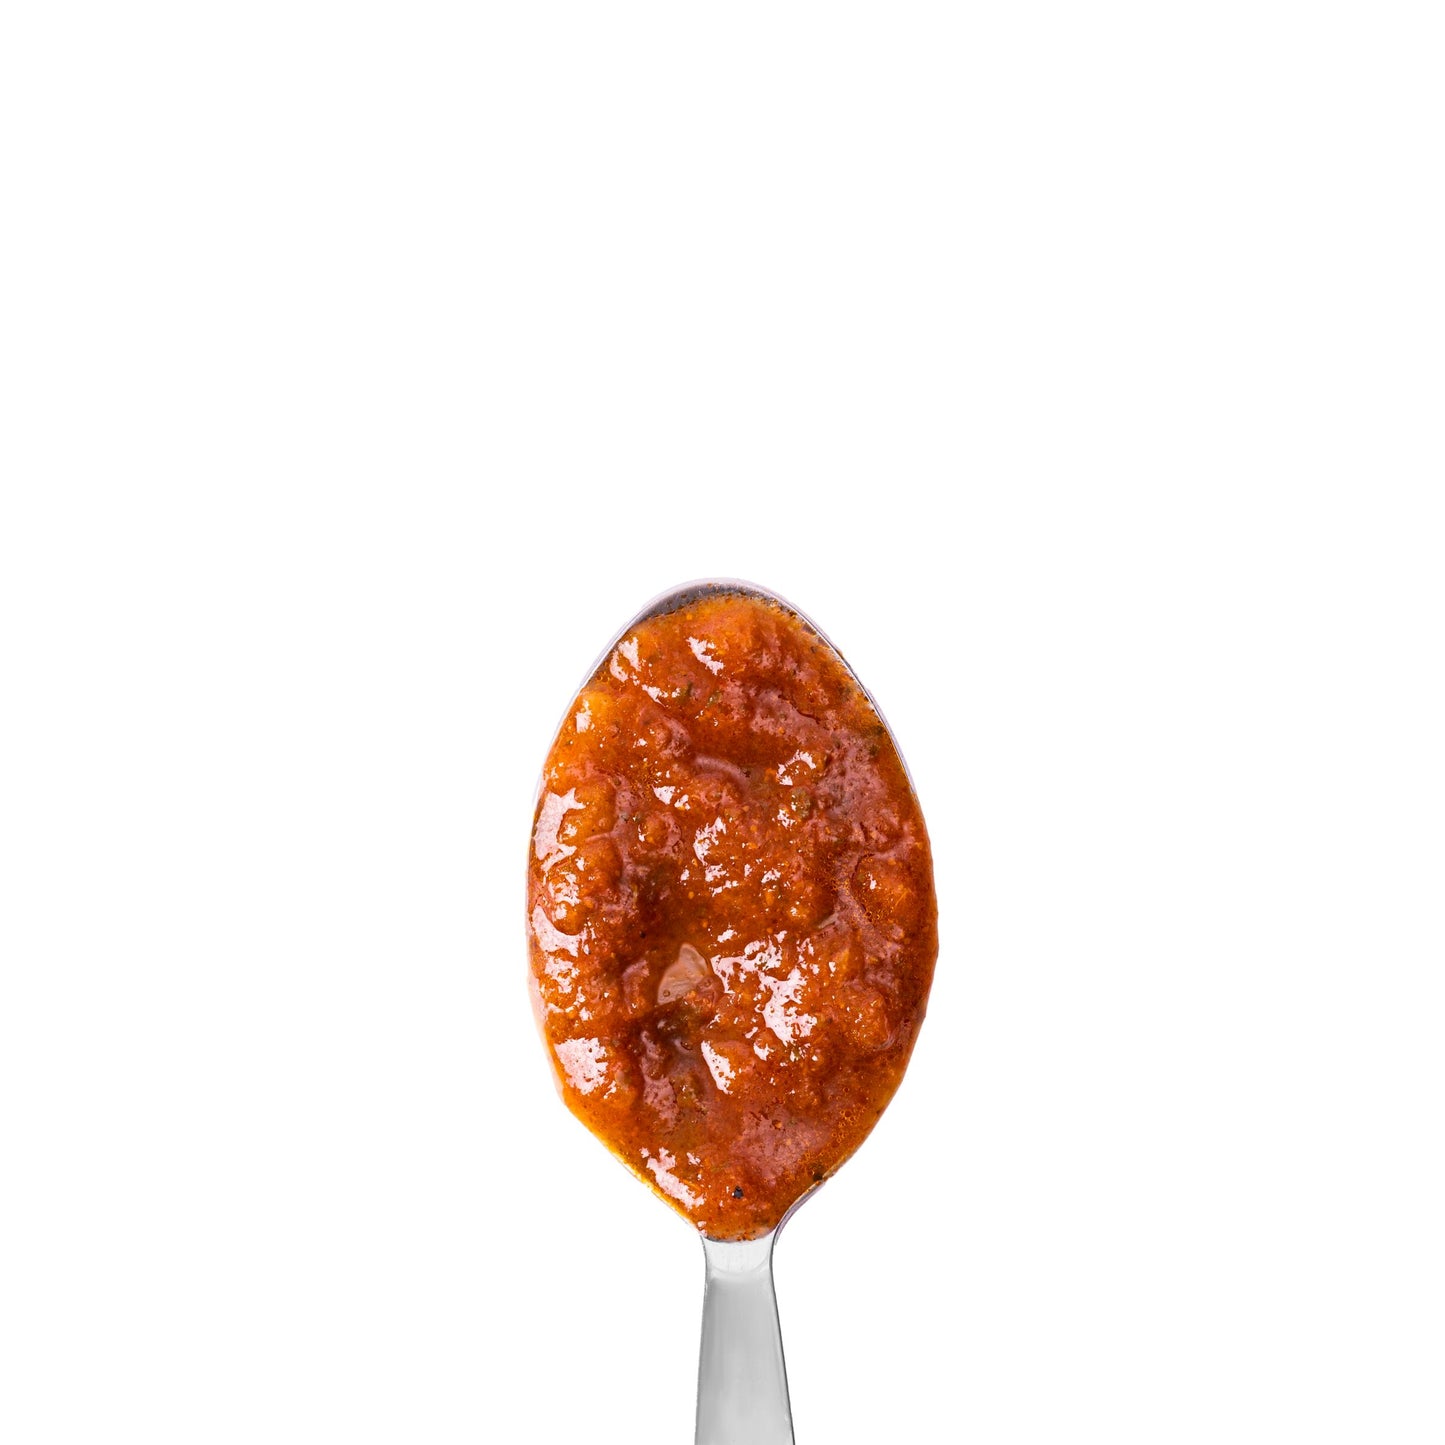 Tomato & Fiery Chilli Pasta Sauce 340g